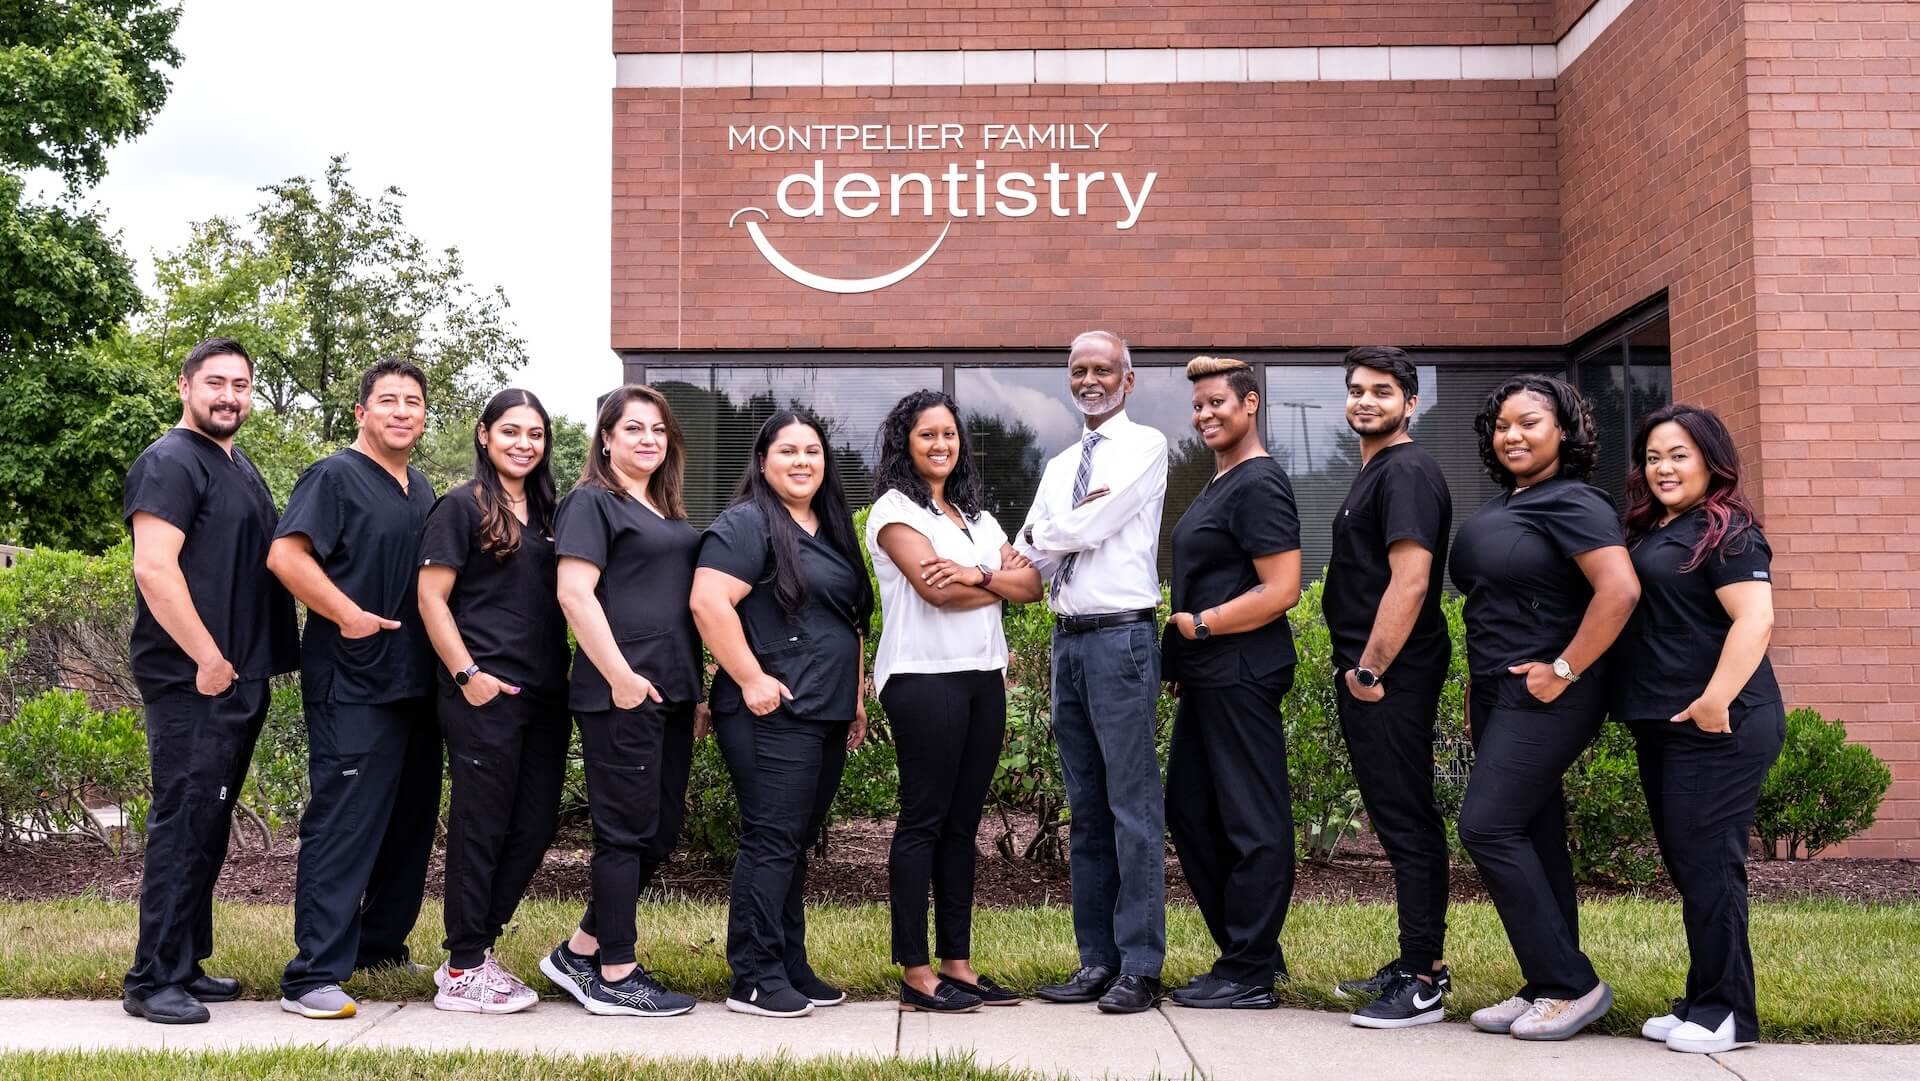 Montpelier Family Dentistry, LLC